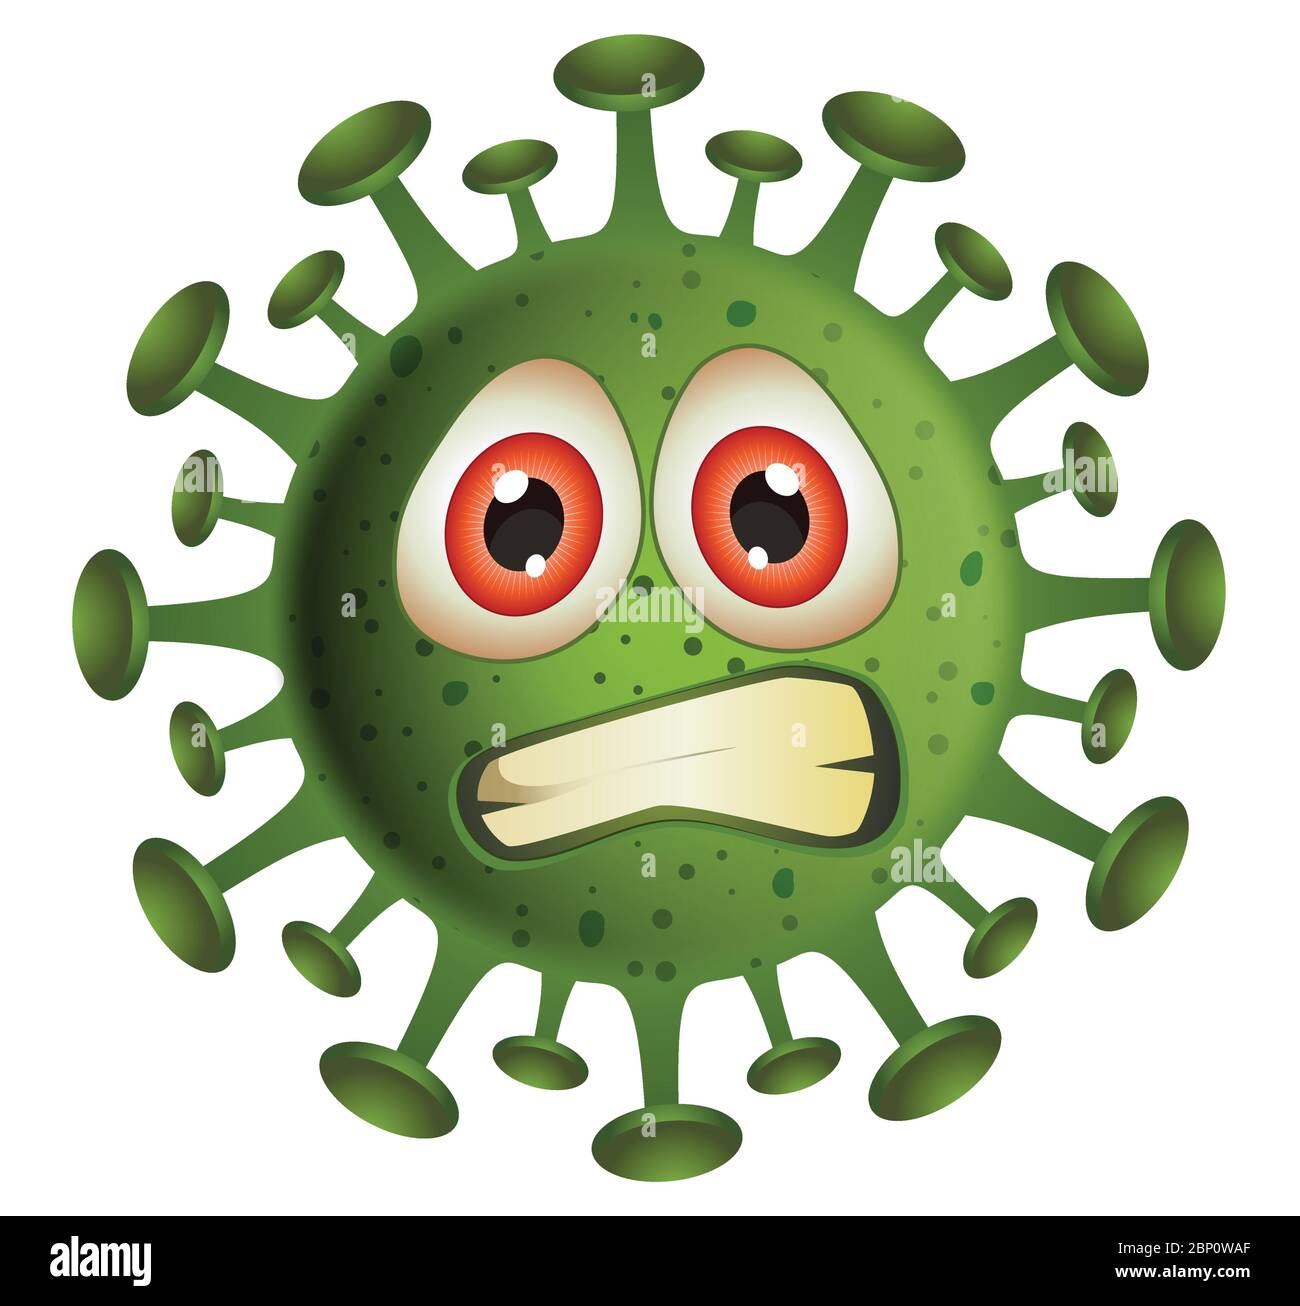 Corona Virus illustration.Green Virus cartoon on white background.Virus vector illustration. Stock Vector